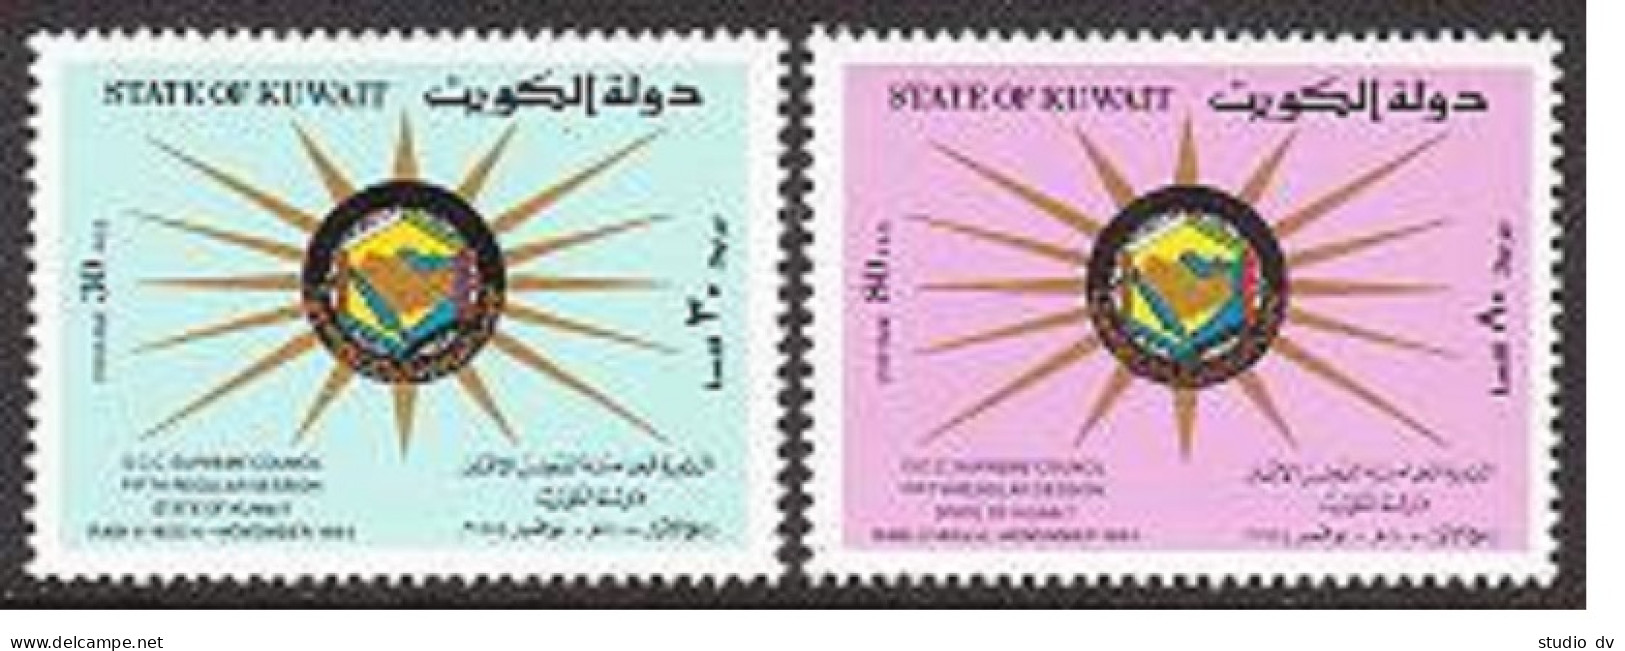 Kuwait 973-974, MNH. Michel 1059-1060. G.C.C. Supreme Council, 5th Session, 1984 - Koweït